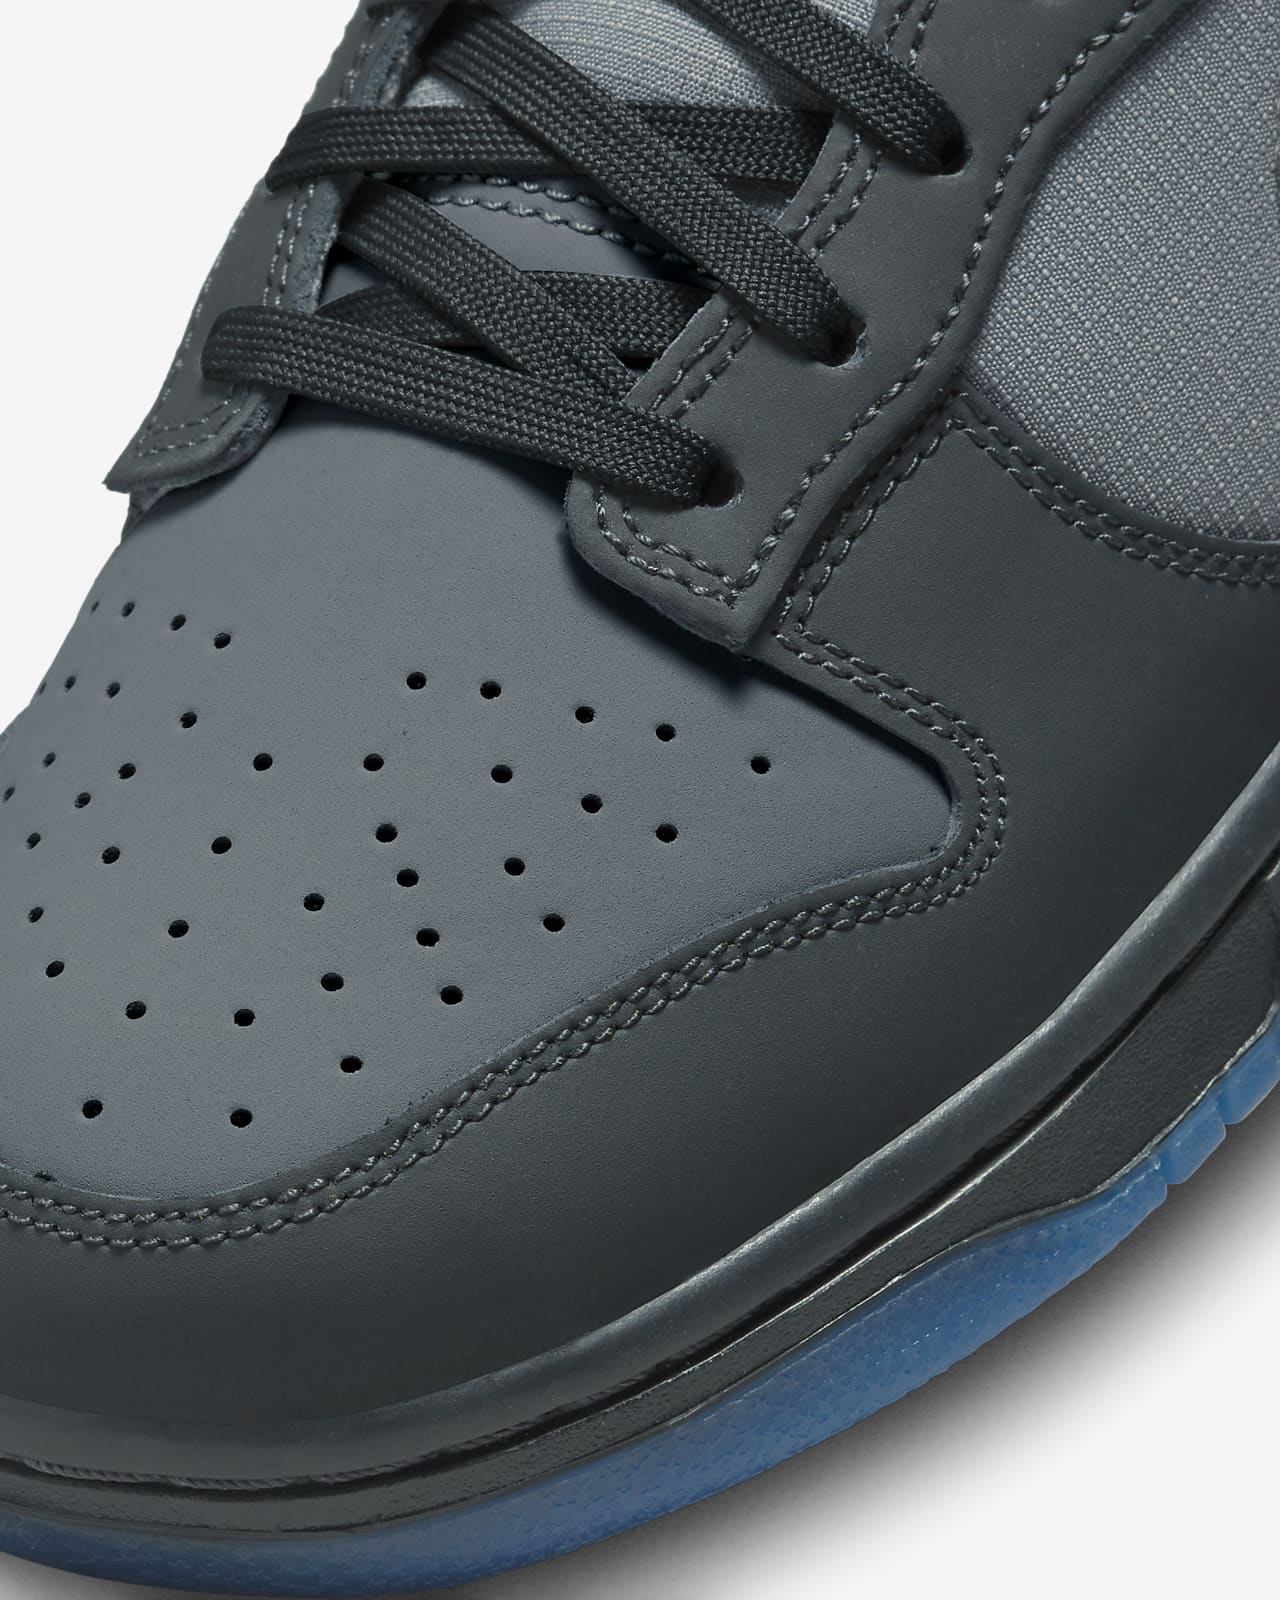 Nike Men's Dunk Low Pro SB Black/Black/University Blue Skate Shoe